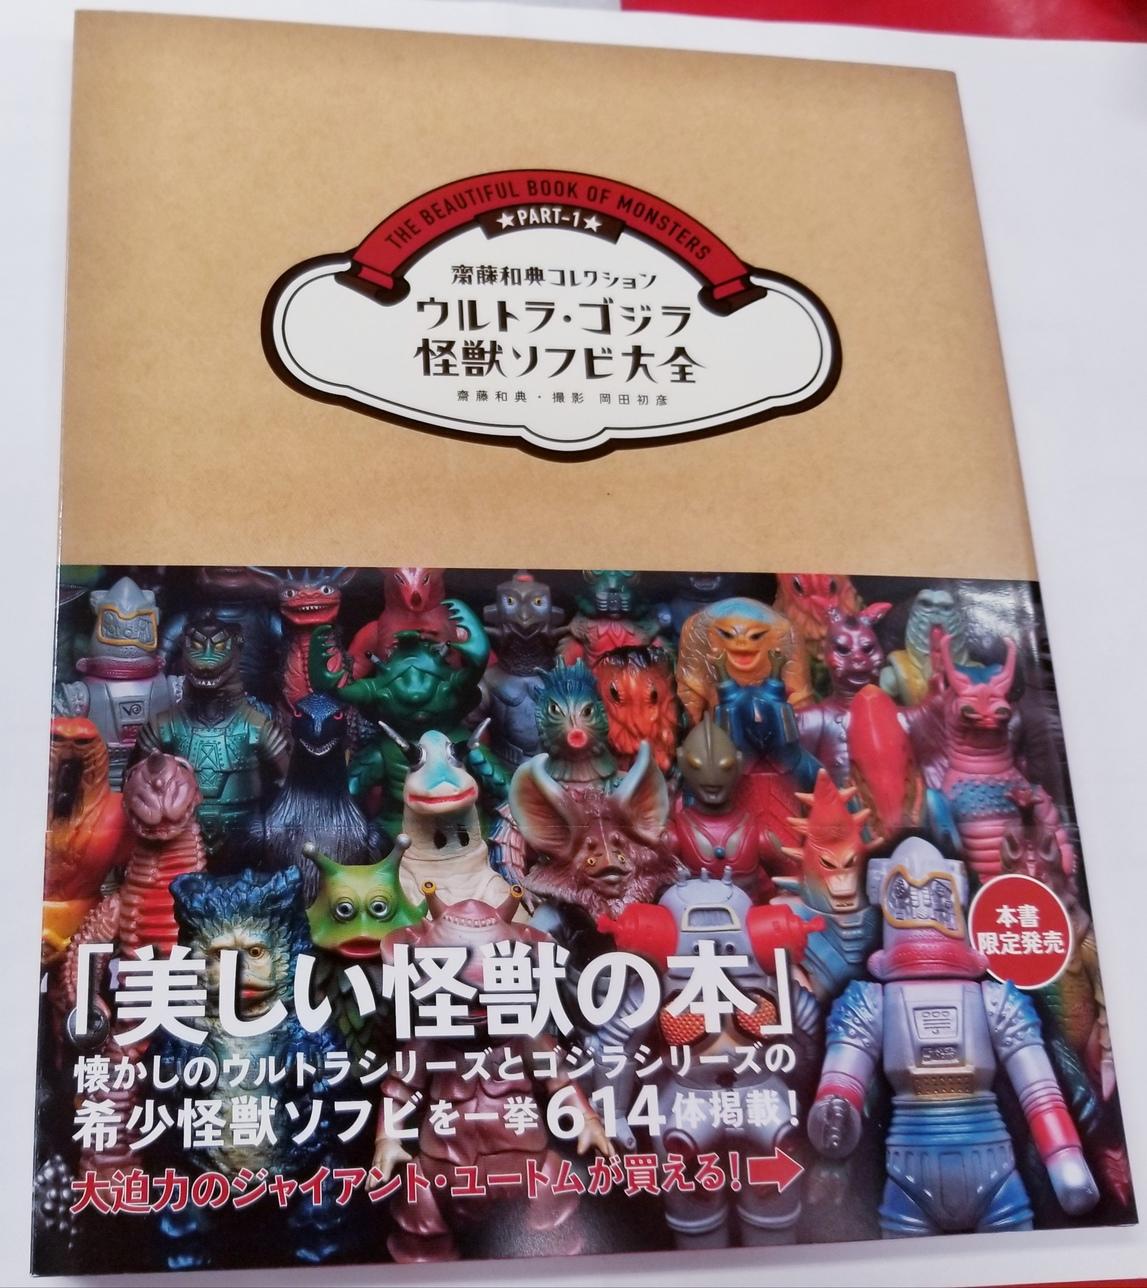 ウルトラ・ゴジラ怪獣ソフビ大全 : 齋藤和典コレクション - アート